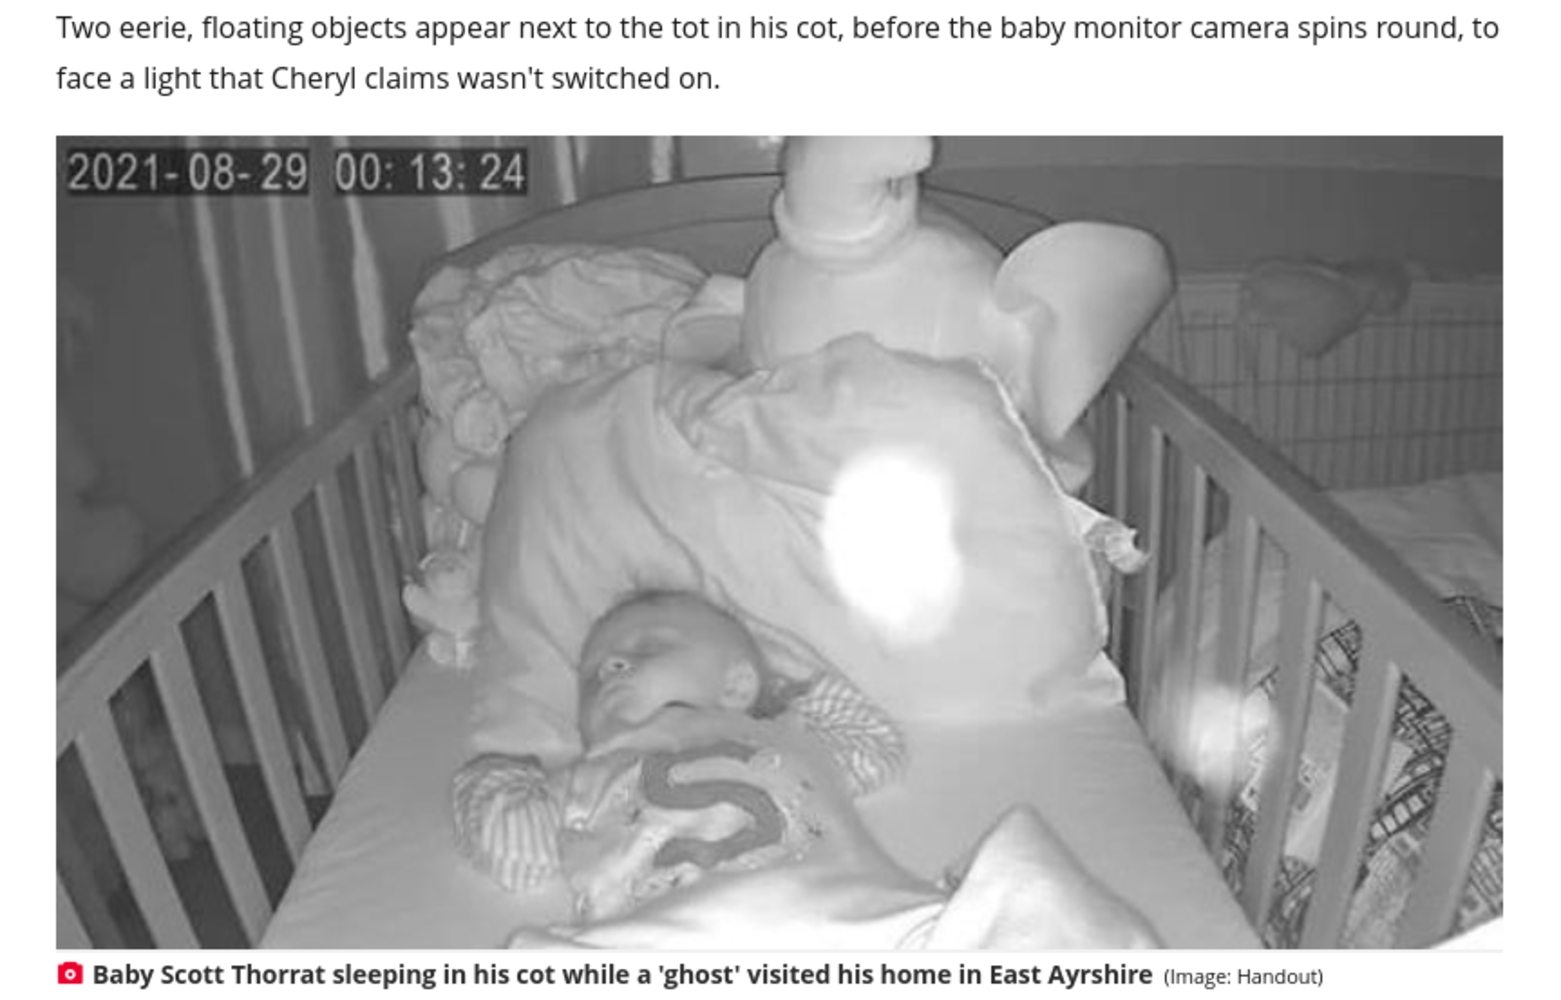 スコットランドのある母親は2021年8月、生後5か月の息子を寝かしつけた後に家の中で奇妙な出来事が起きていることを知る。ベビーモニターには2つの白い物体が映っていた（『Daily Record　「‘Ghost’ visits Scots tot as spooked parents spot objects on monitor that ‘spins by itself’」（Image: Handout）』より）